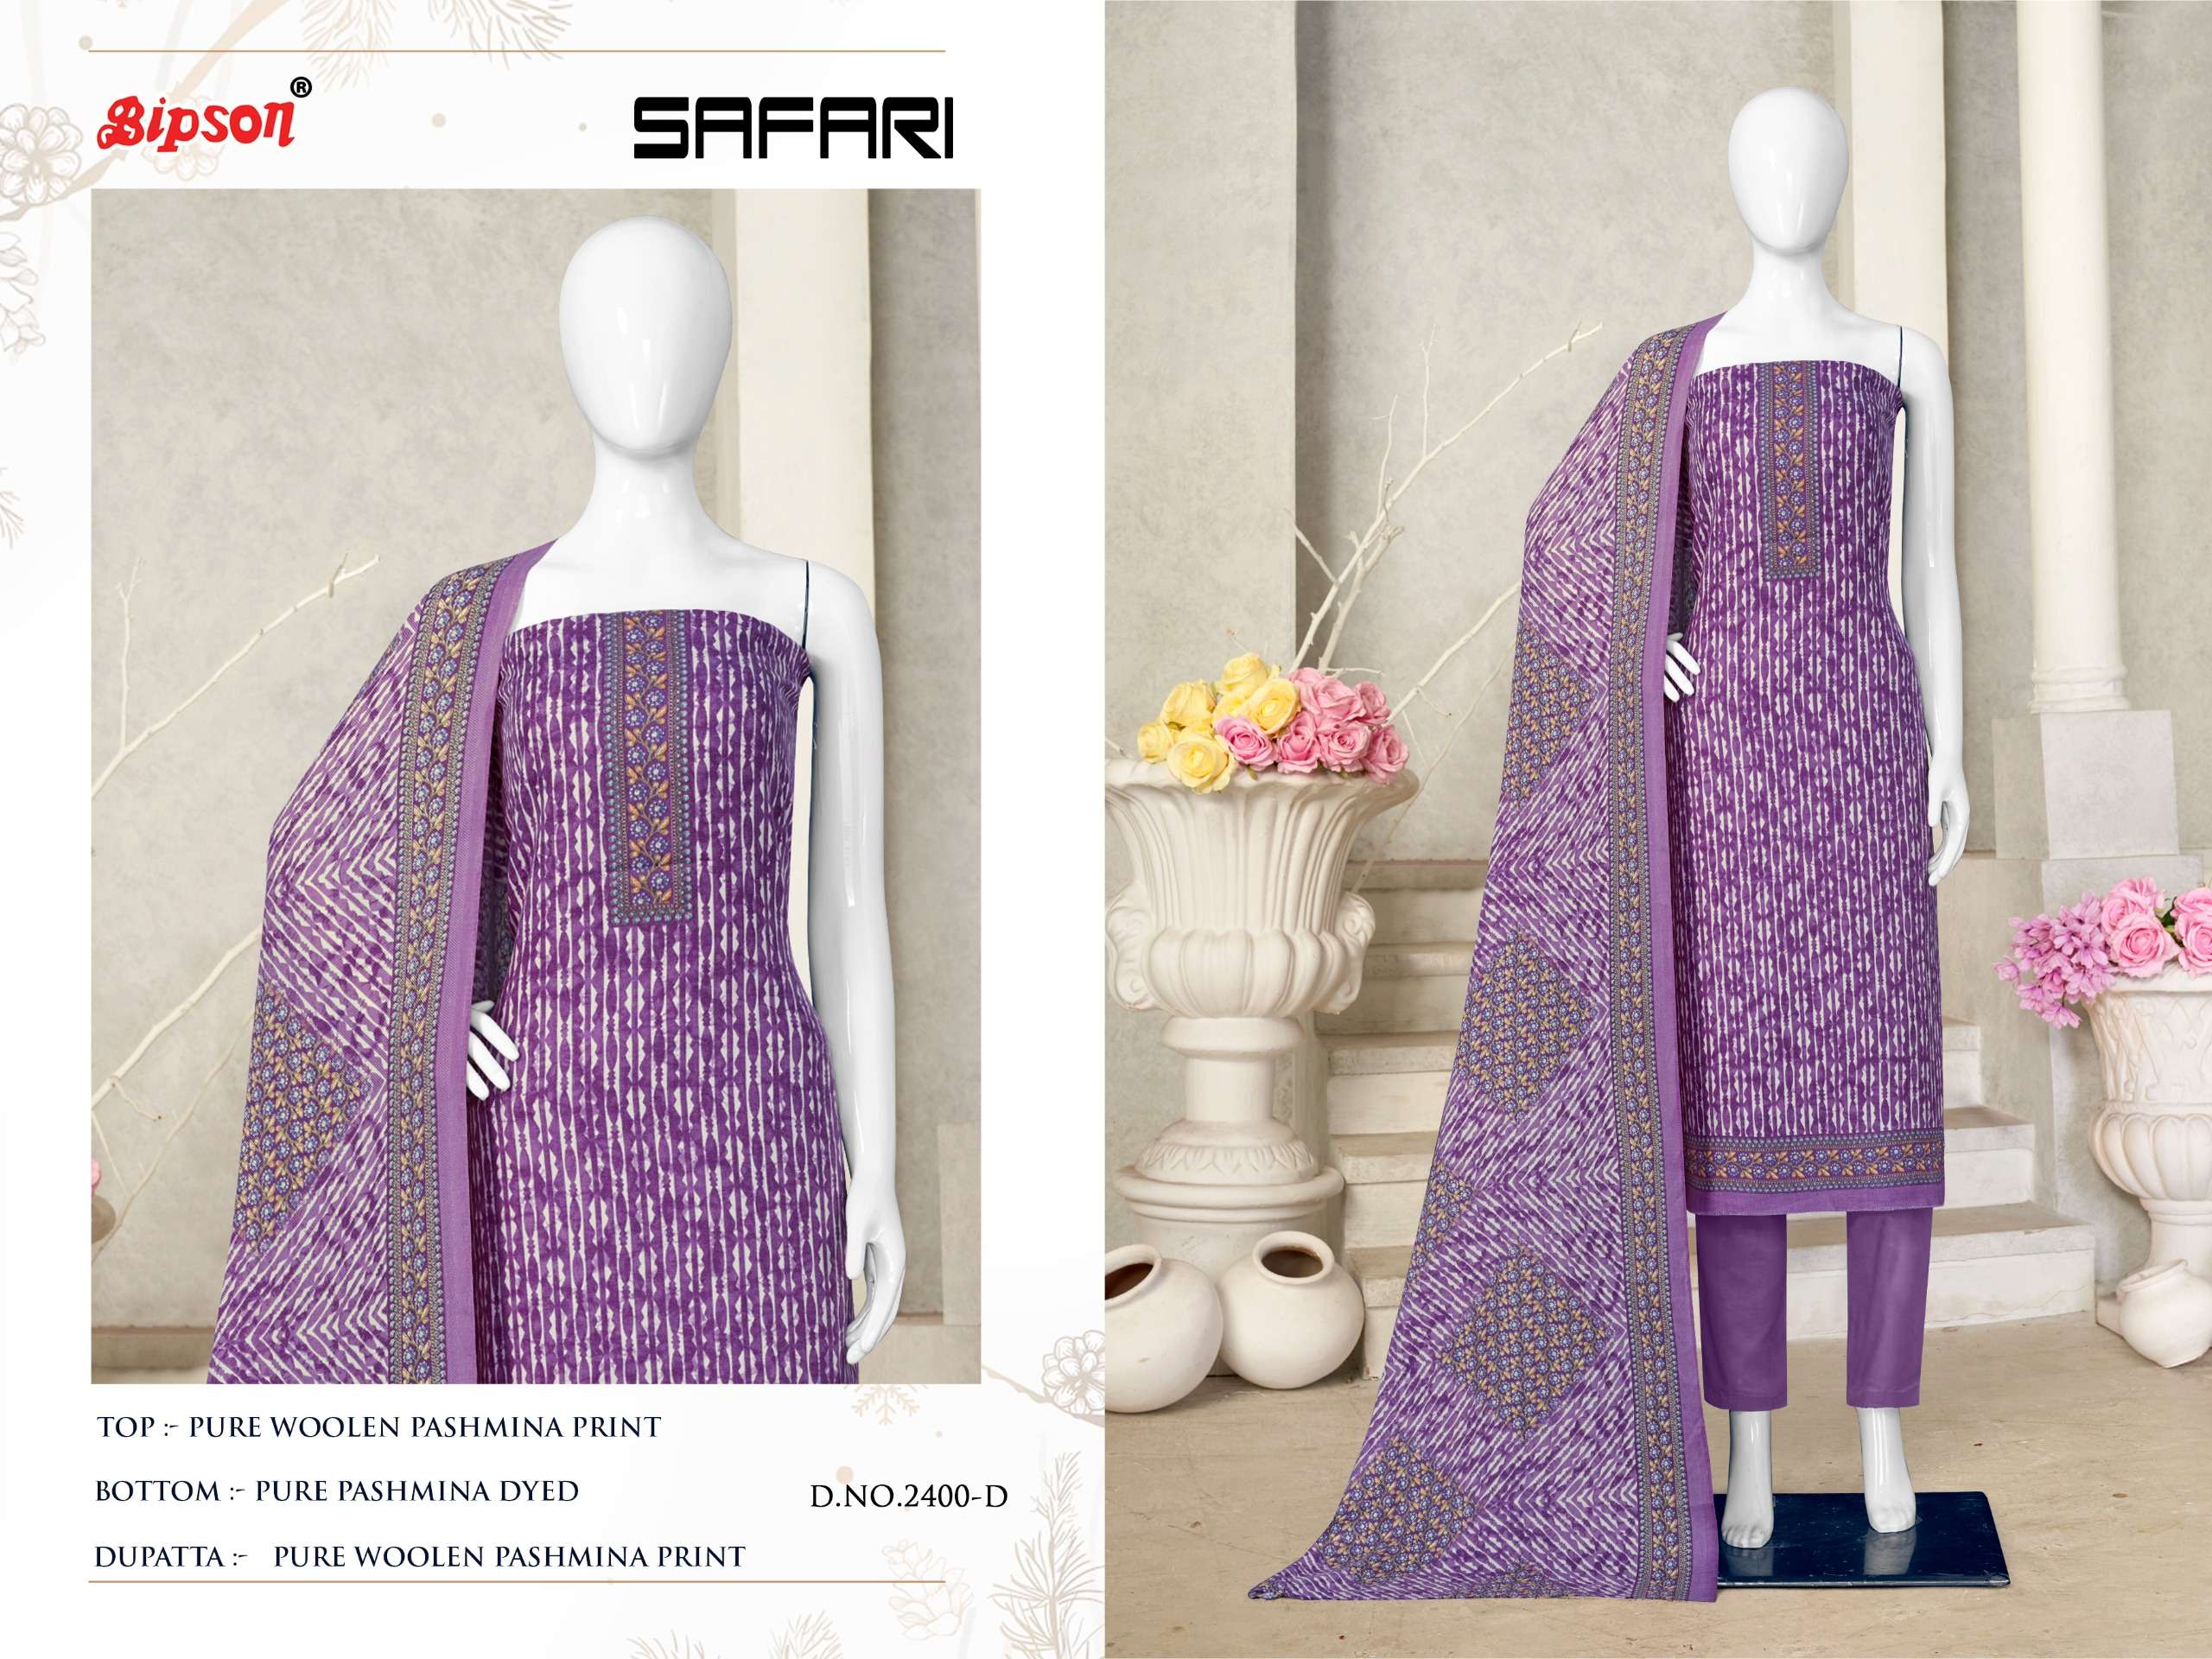 bipson safari 2400 colours latest designer party wear suit wholesaler surat gujarat